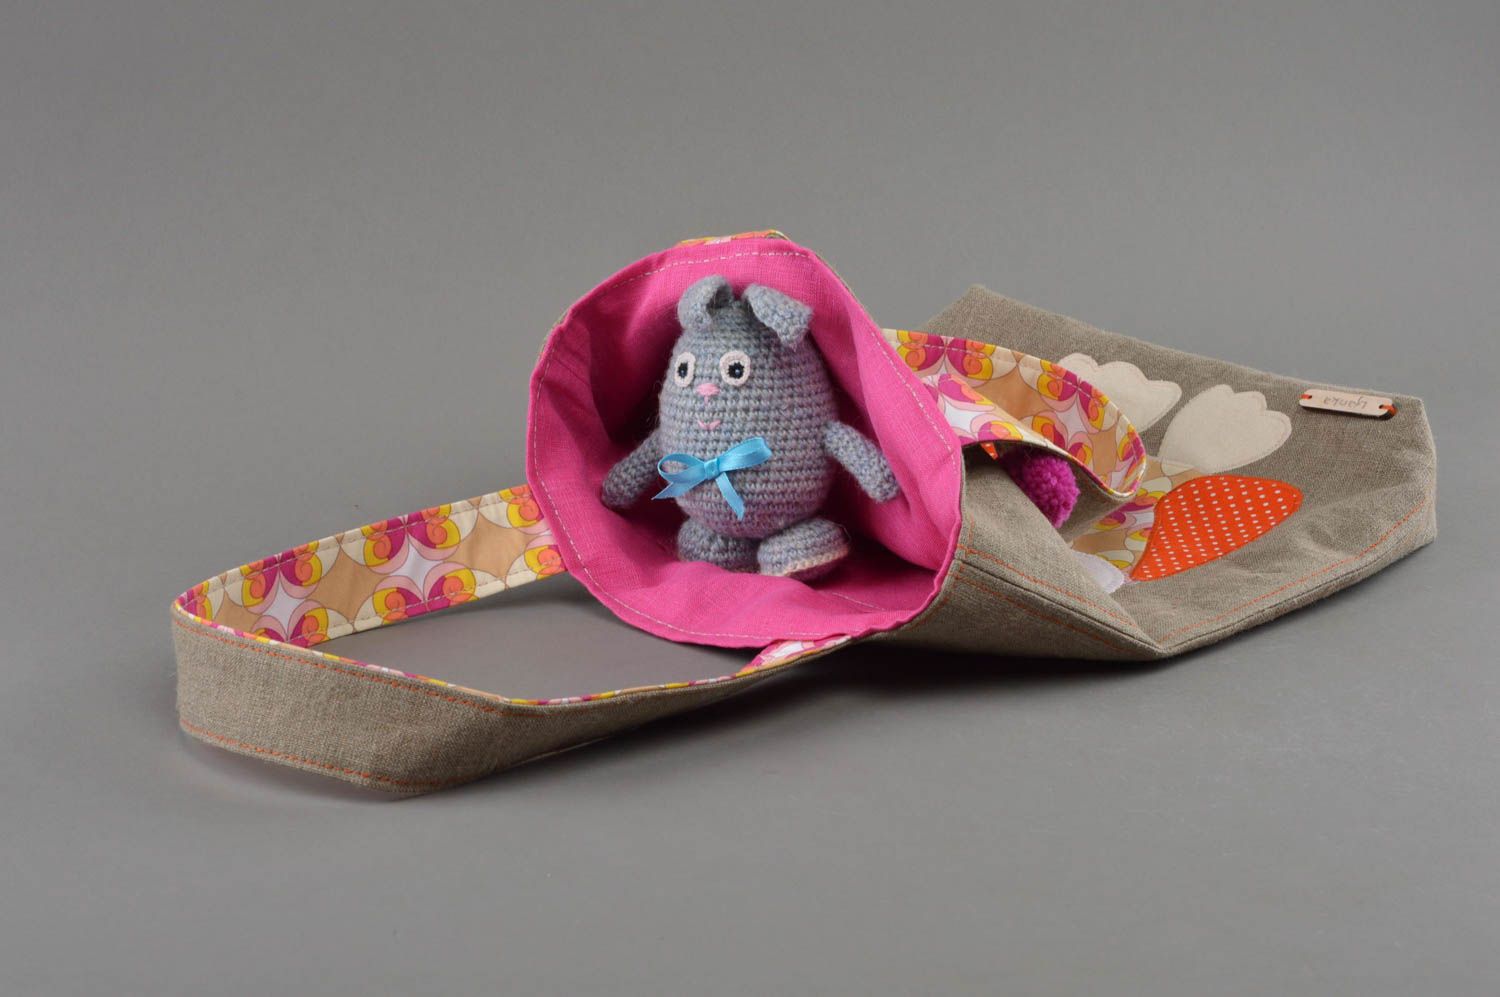 Öko Tasche aus Stoff originell handmade mit Eule schön künstlerisch für Kind foto 3